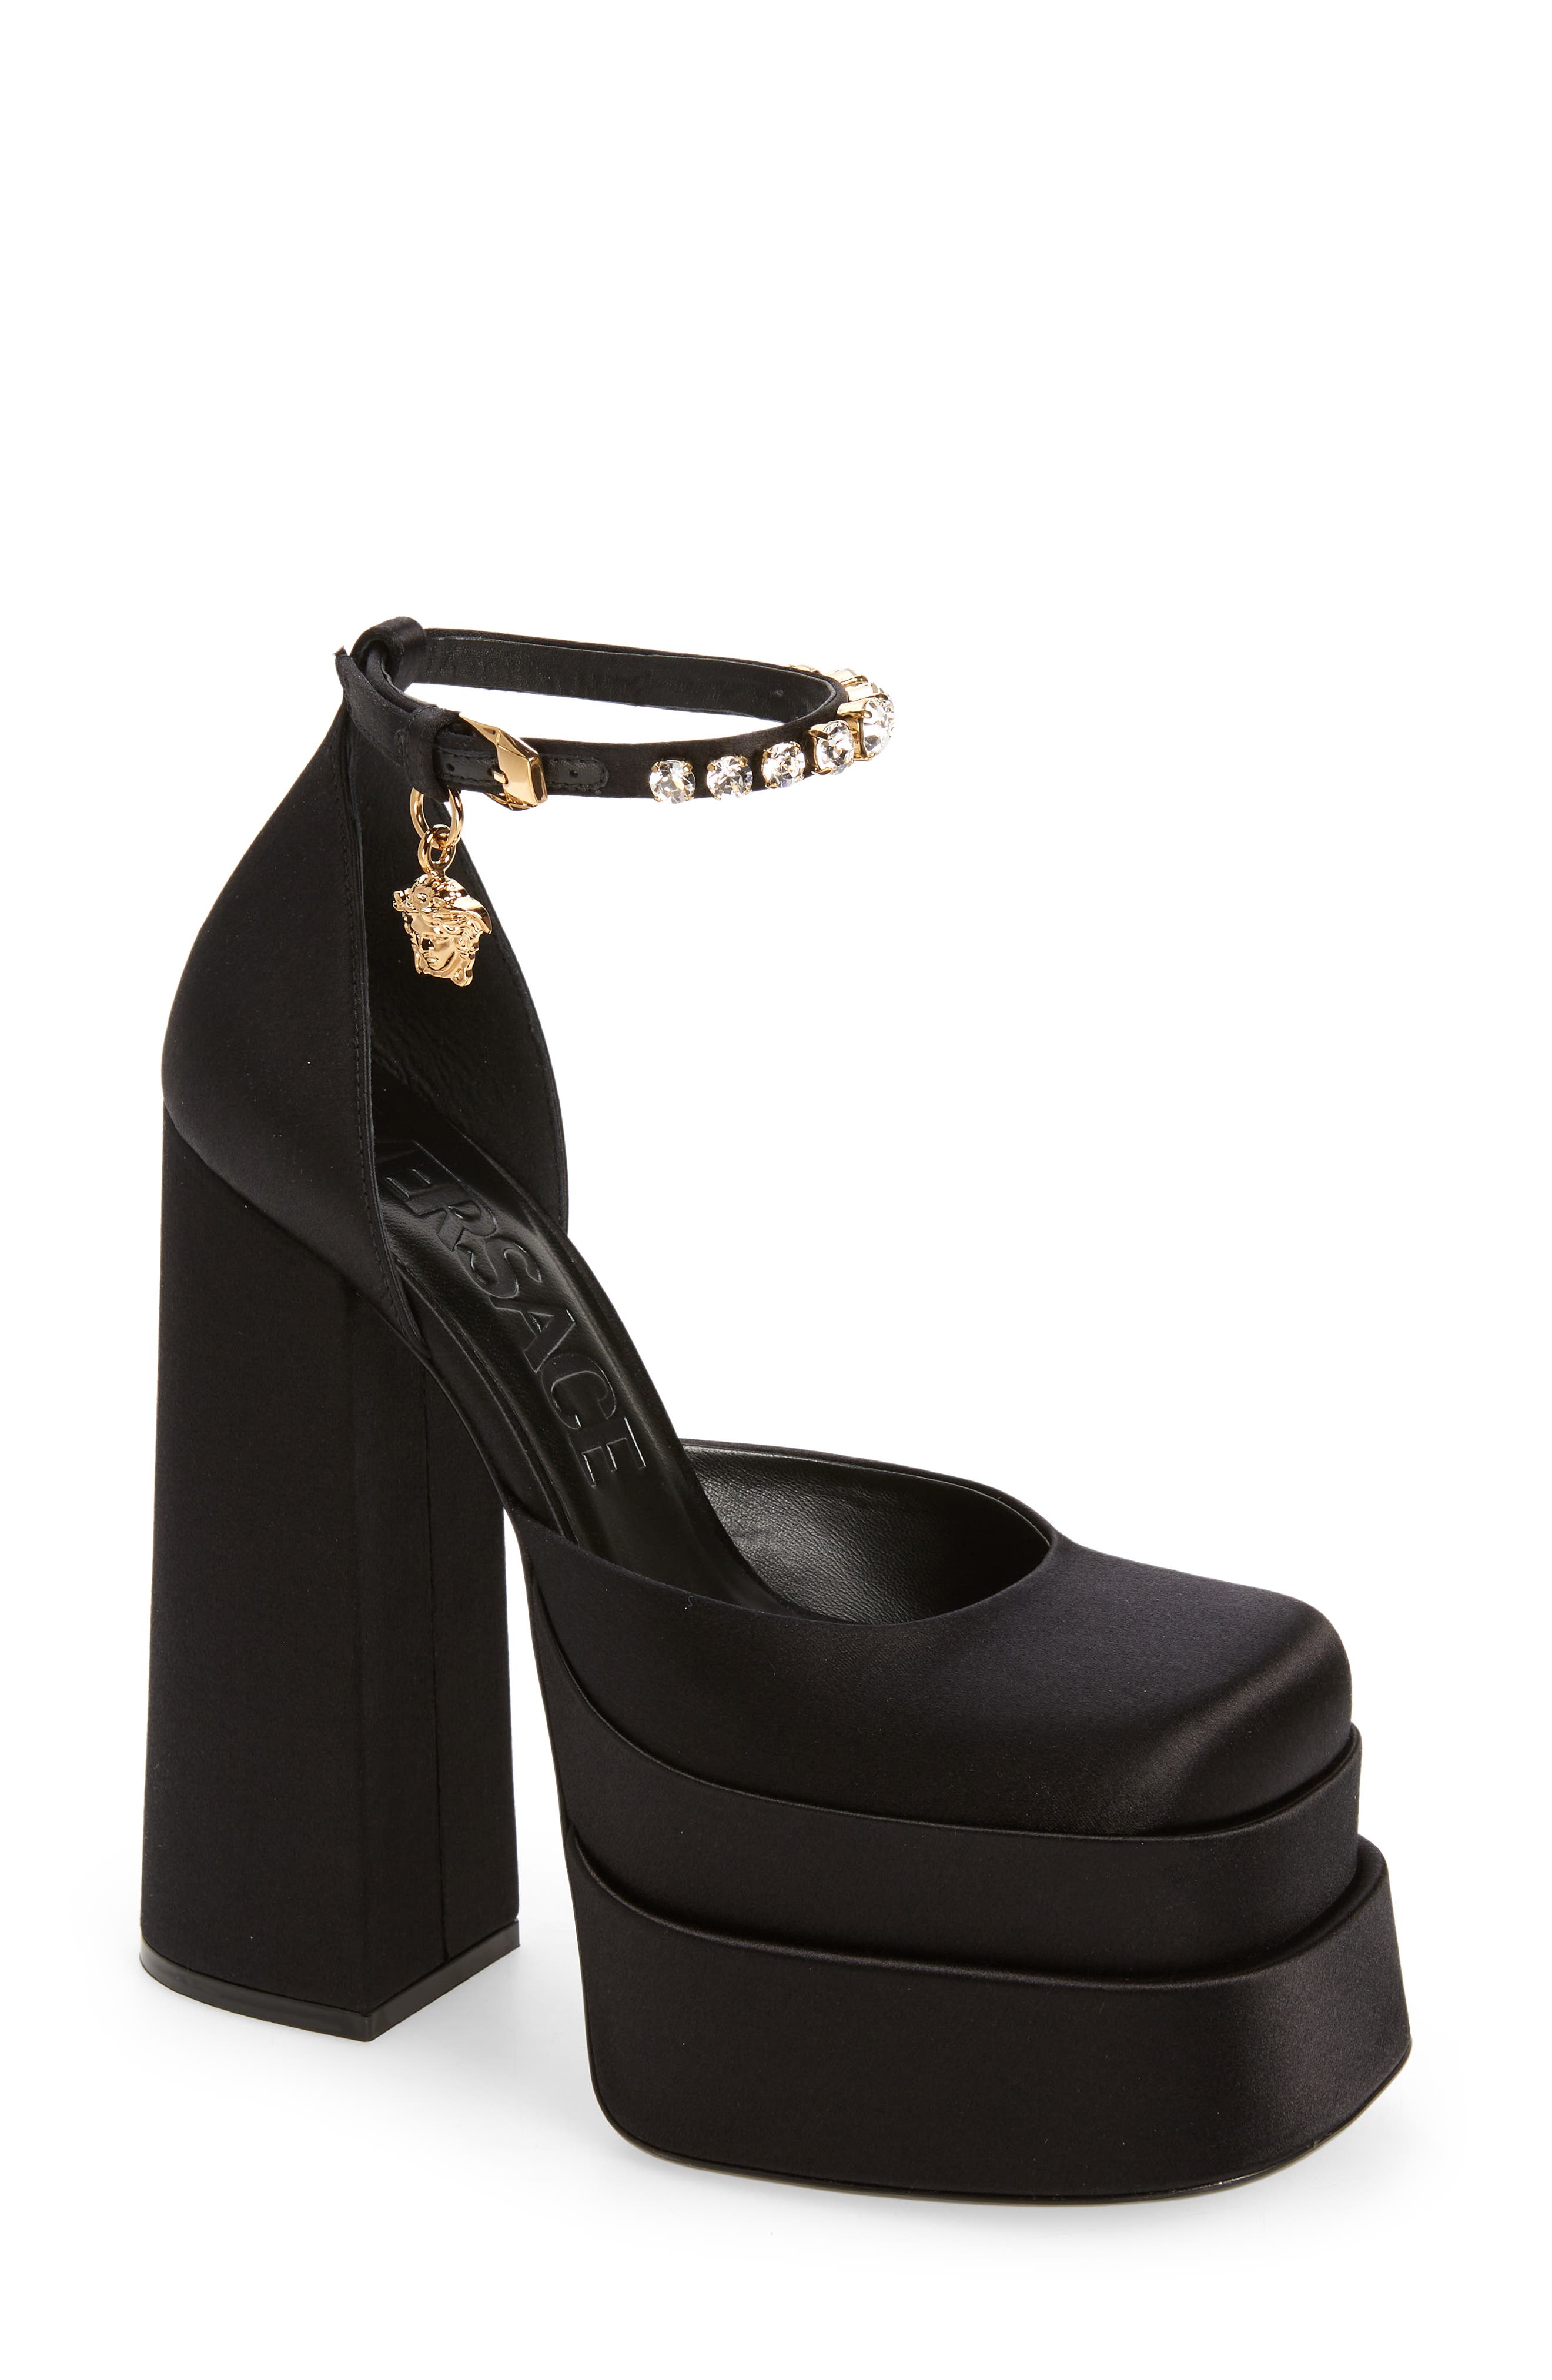 Versace Medusa Platform Sandal in Black-Versace Gold at Nordstrom, Size 10Us